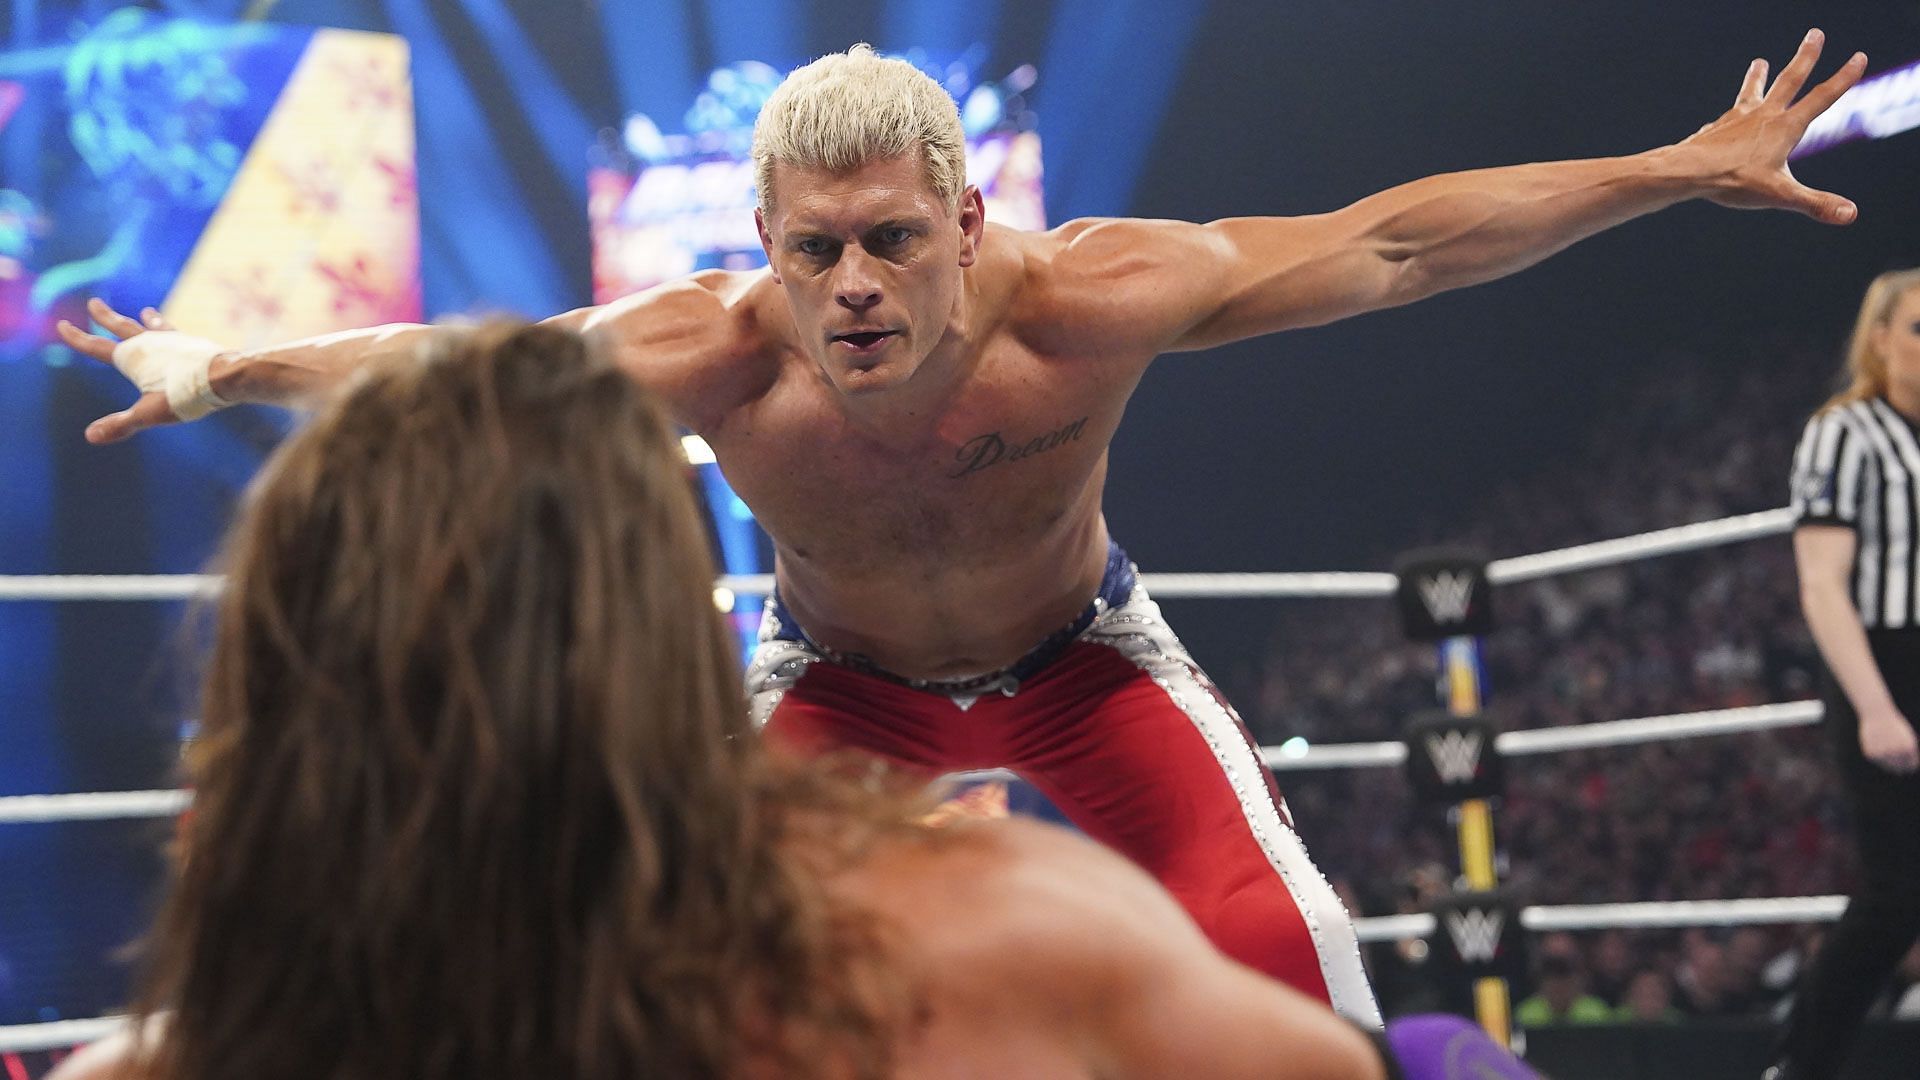 Cody Rhodes at Backlash France [Image via WWE.com]